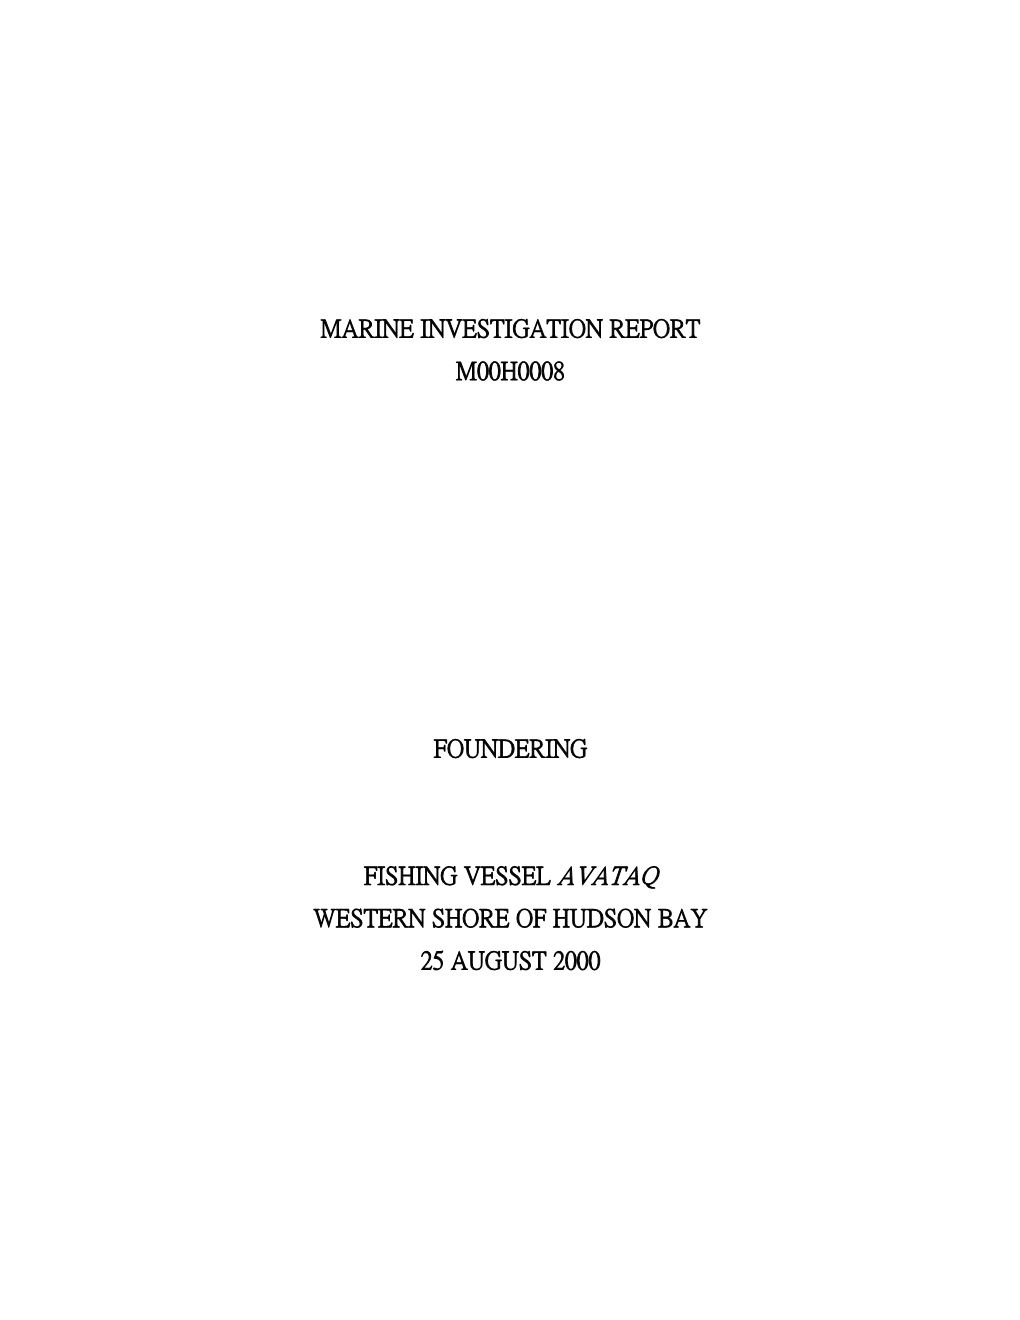 Marine Investigation Report M00h0008